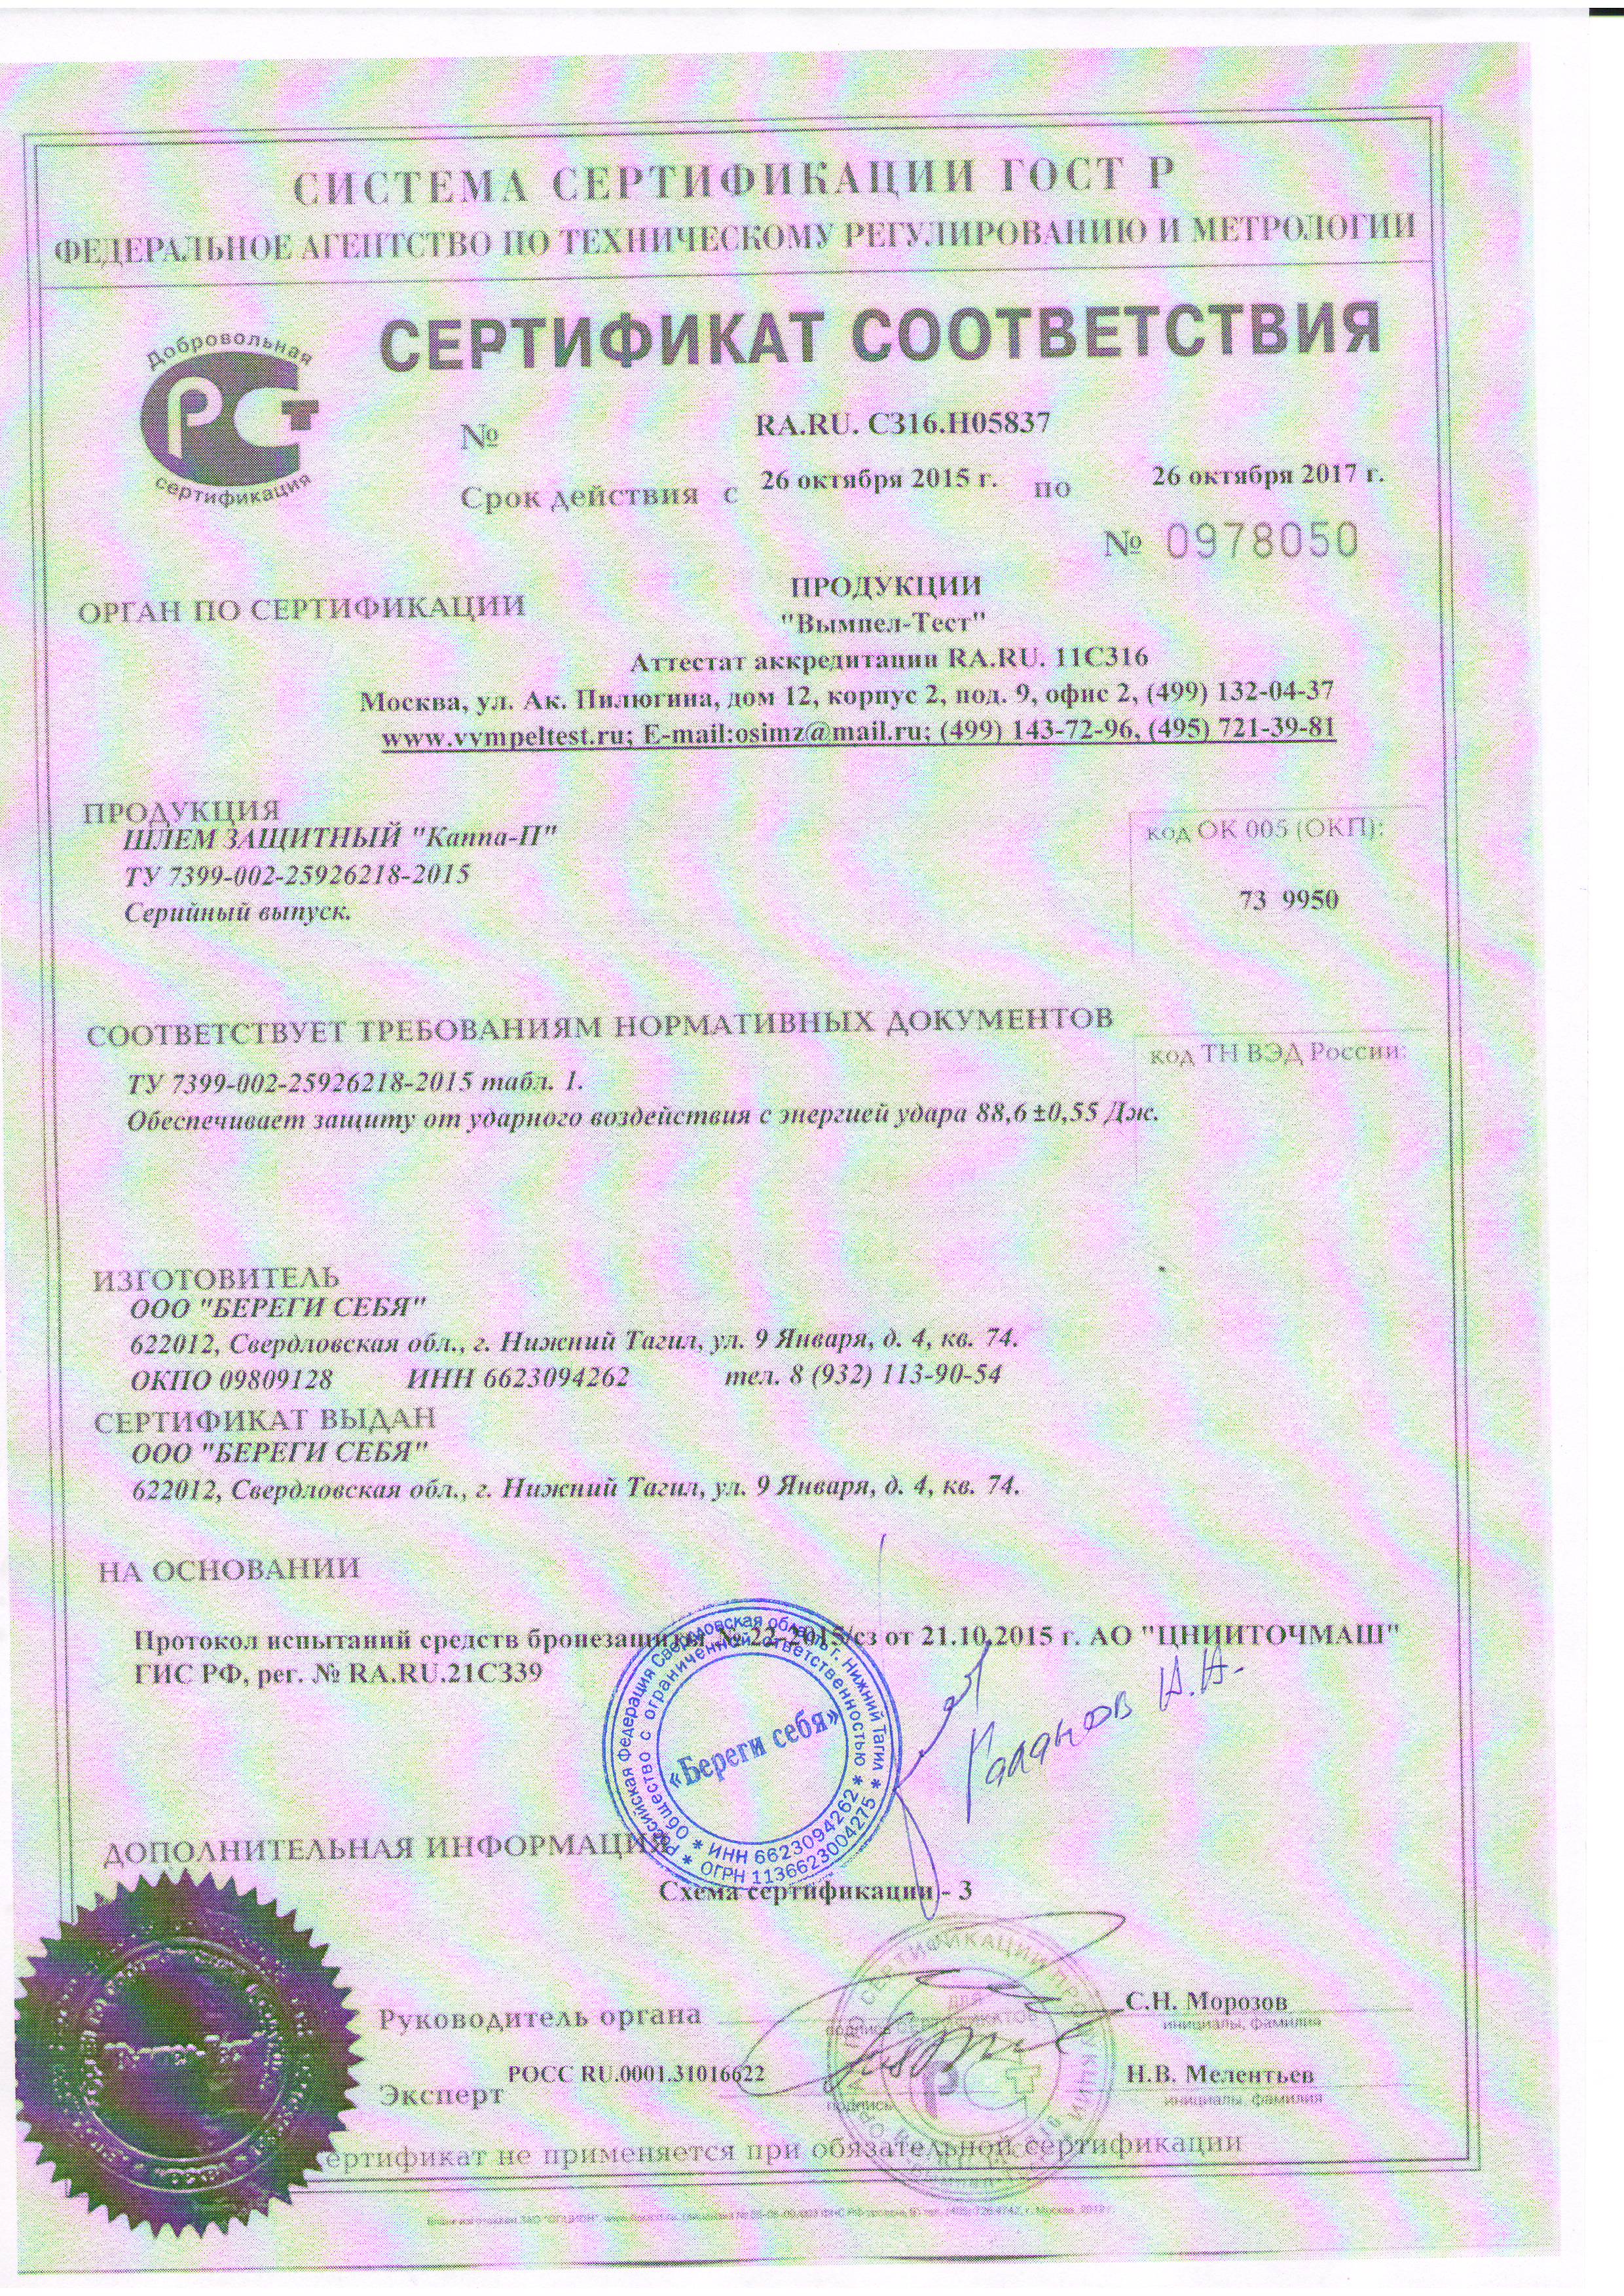 Сертификат соответствия защитного шлема Каппа-П